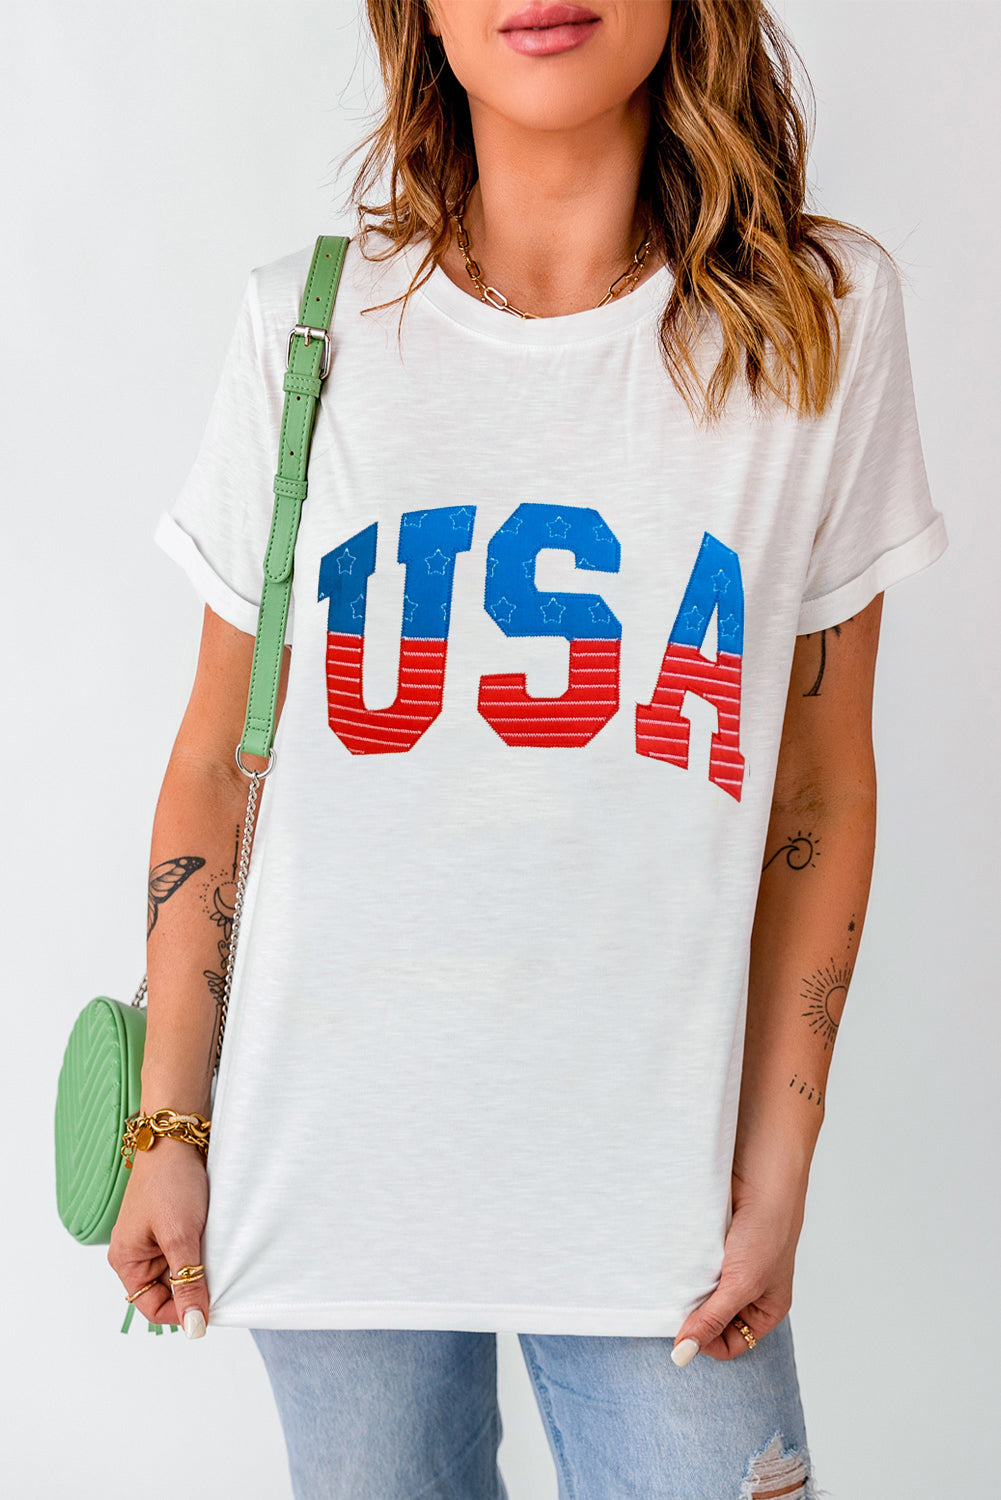 USA Round Neck Short Sleeve T-Shirt Sunset and Swim White S 